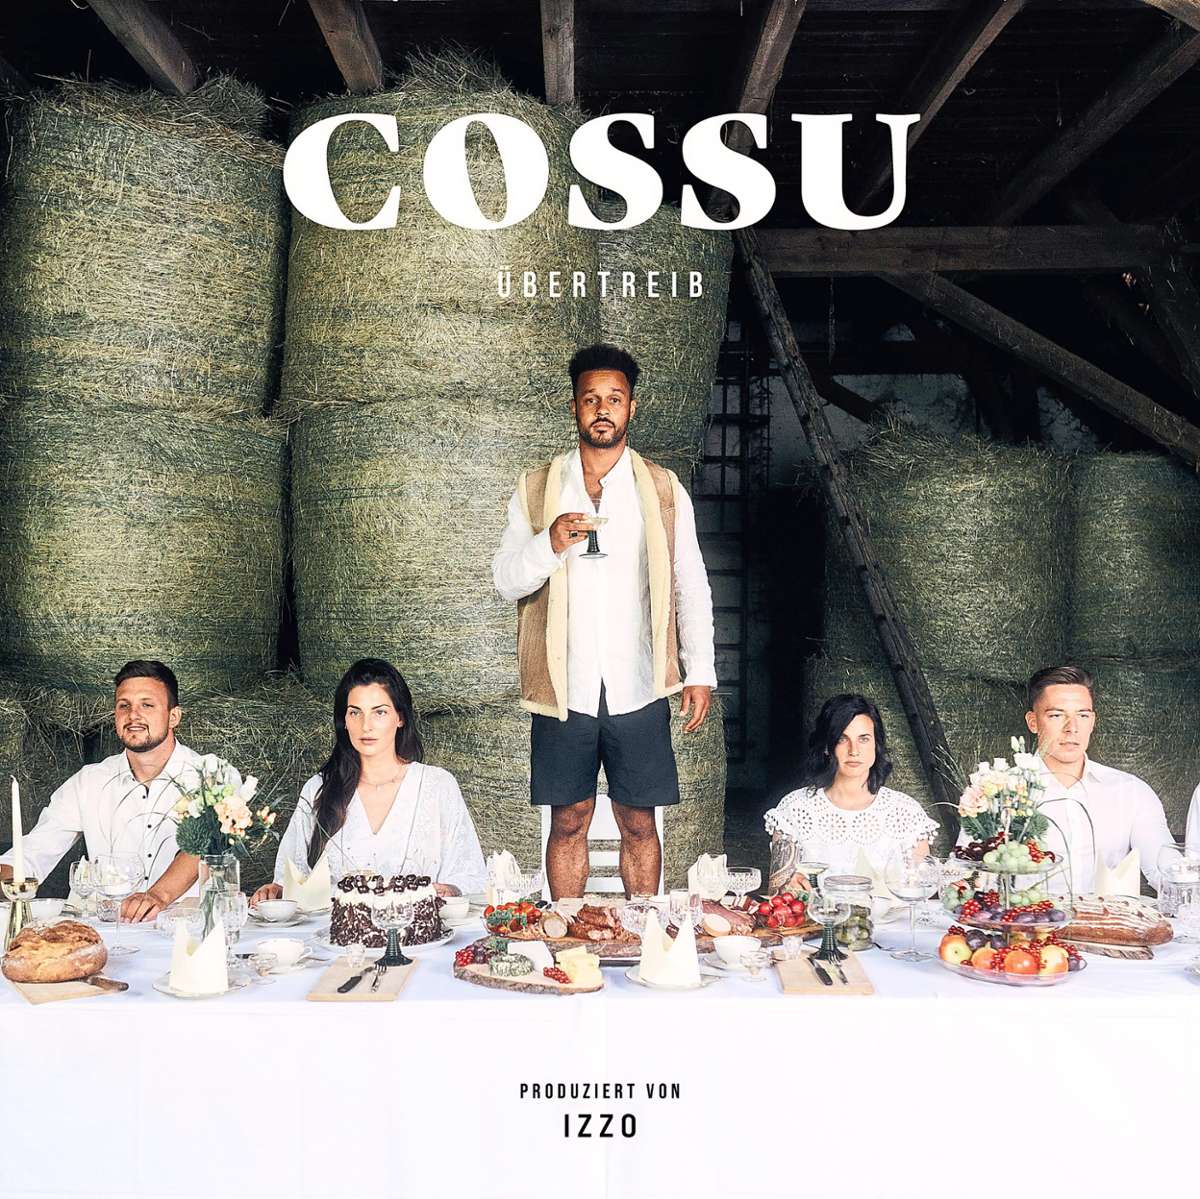 Das Musikvideo zu seinem neuen Lied hat der Musiker Cossu gemeinsam mit Freunden auf dem Hof seines Kumpels im Schwarzwald gedreht.